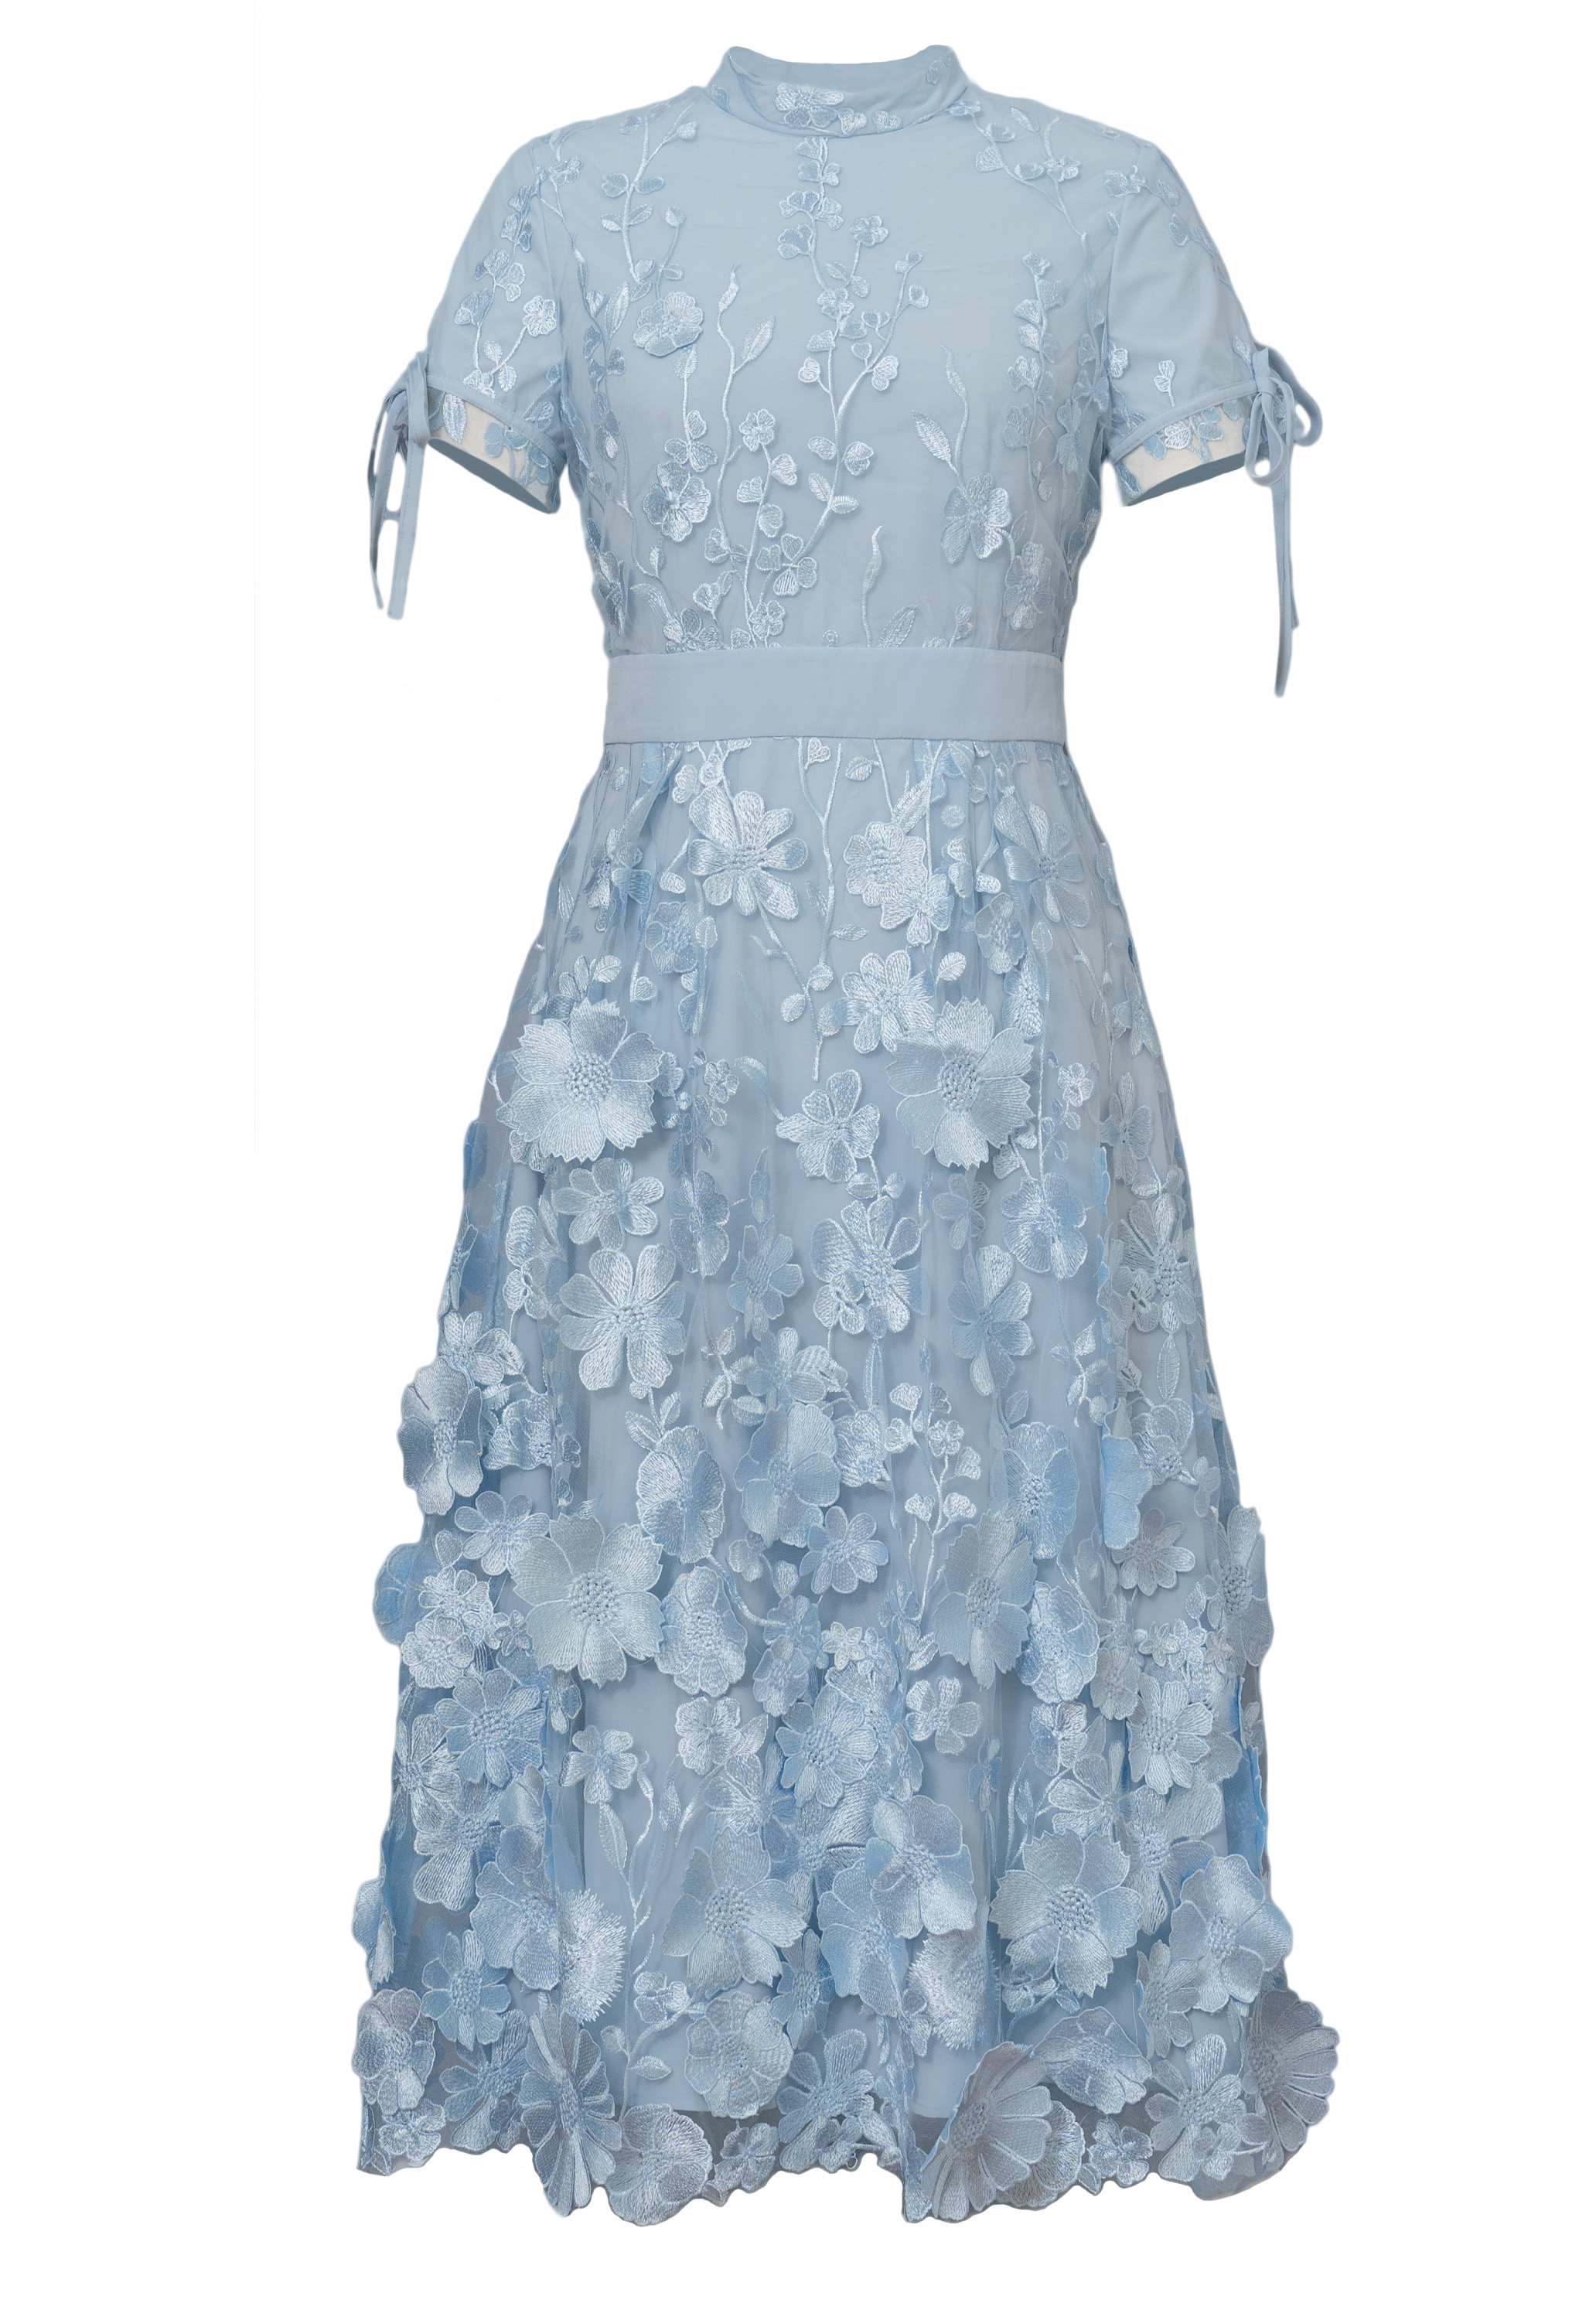 3D Embroidery Applique Dress